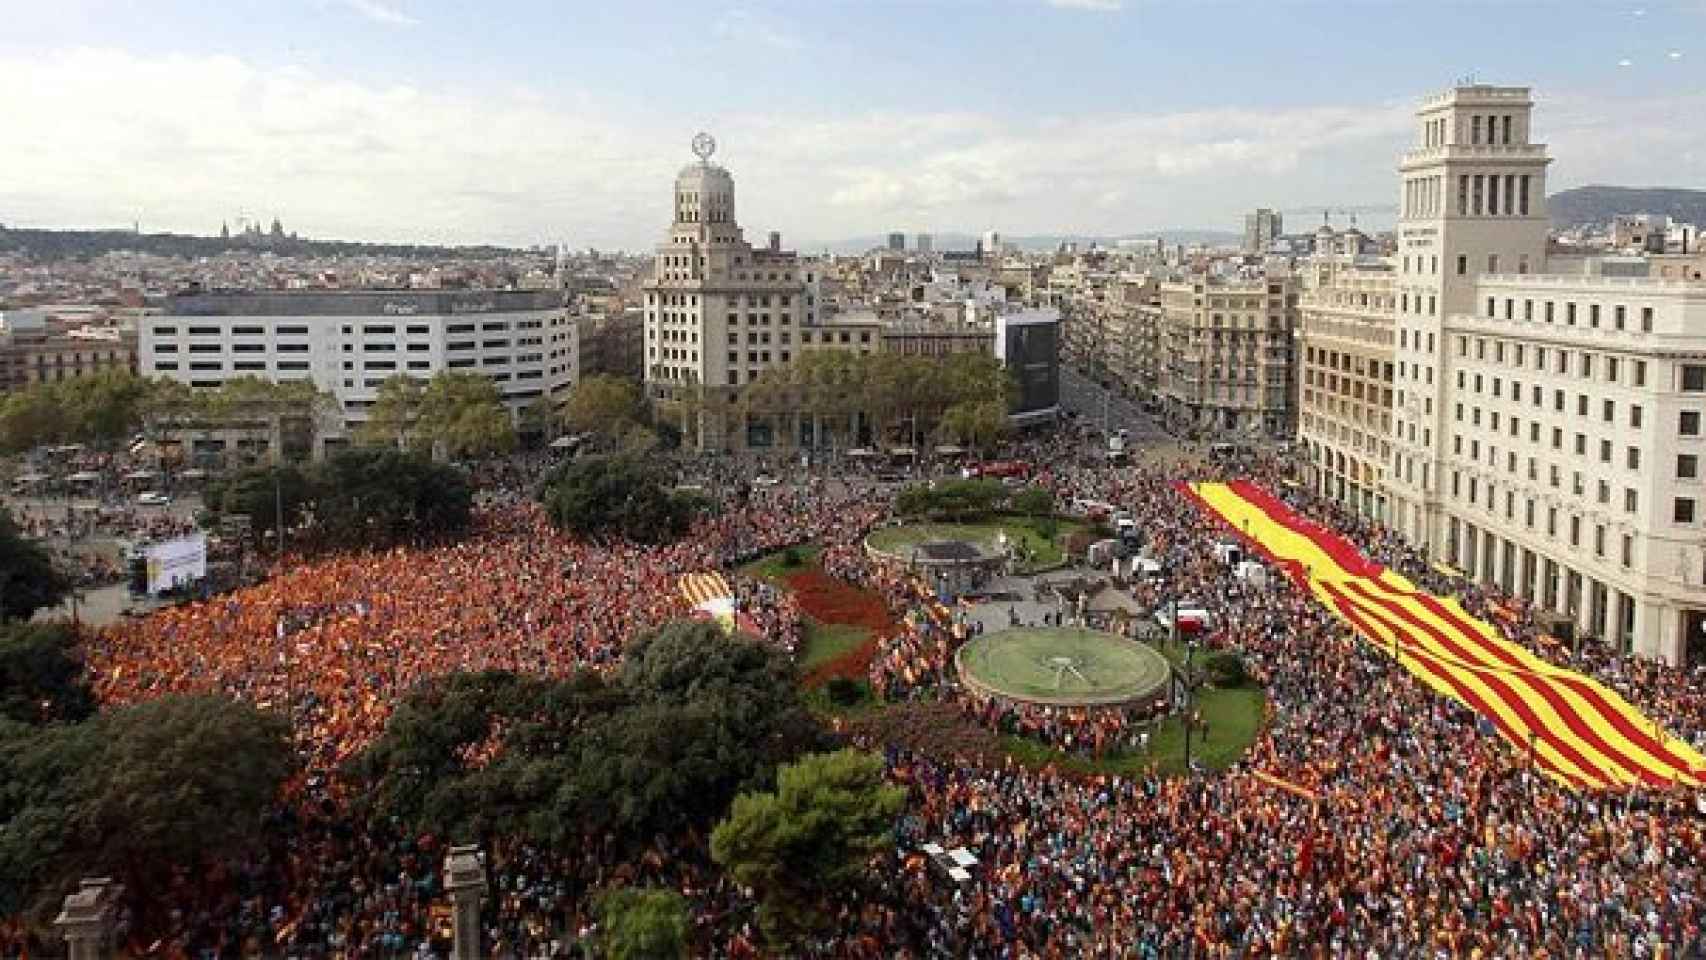 Vista panorámica de la Plaza de Cataluña y adyacentes durante el acto festivo del 12-O en favor de la unidad de España